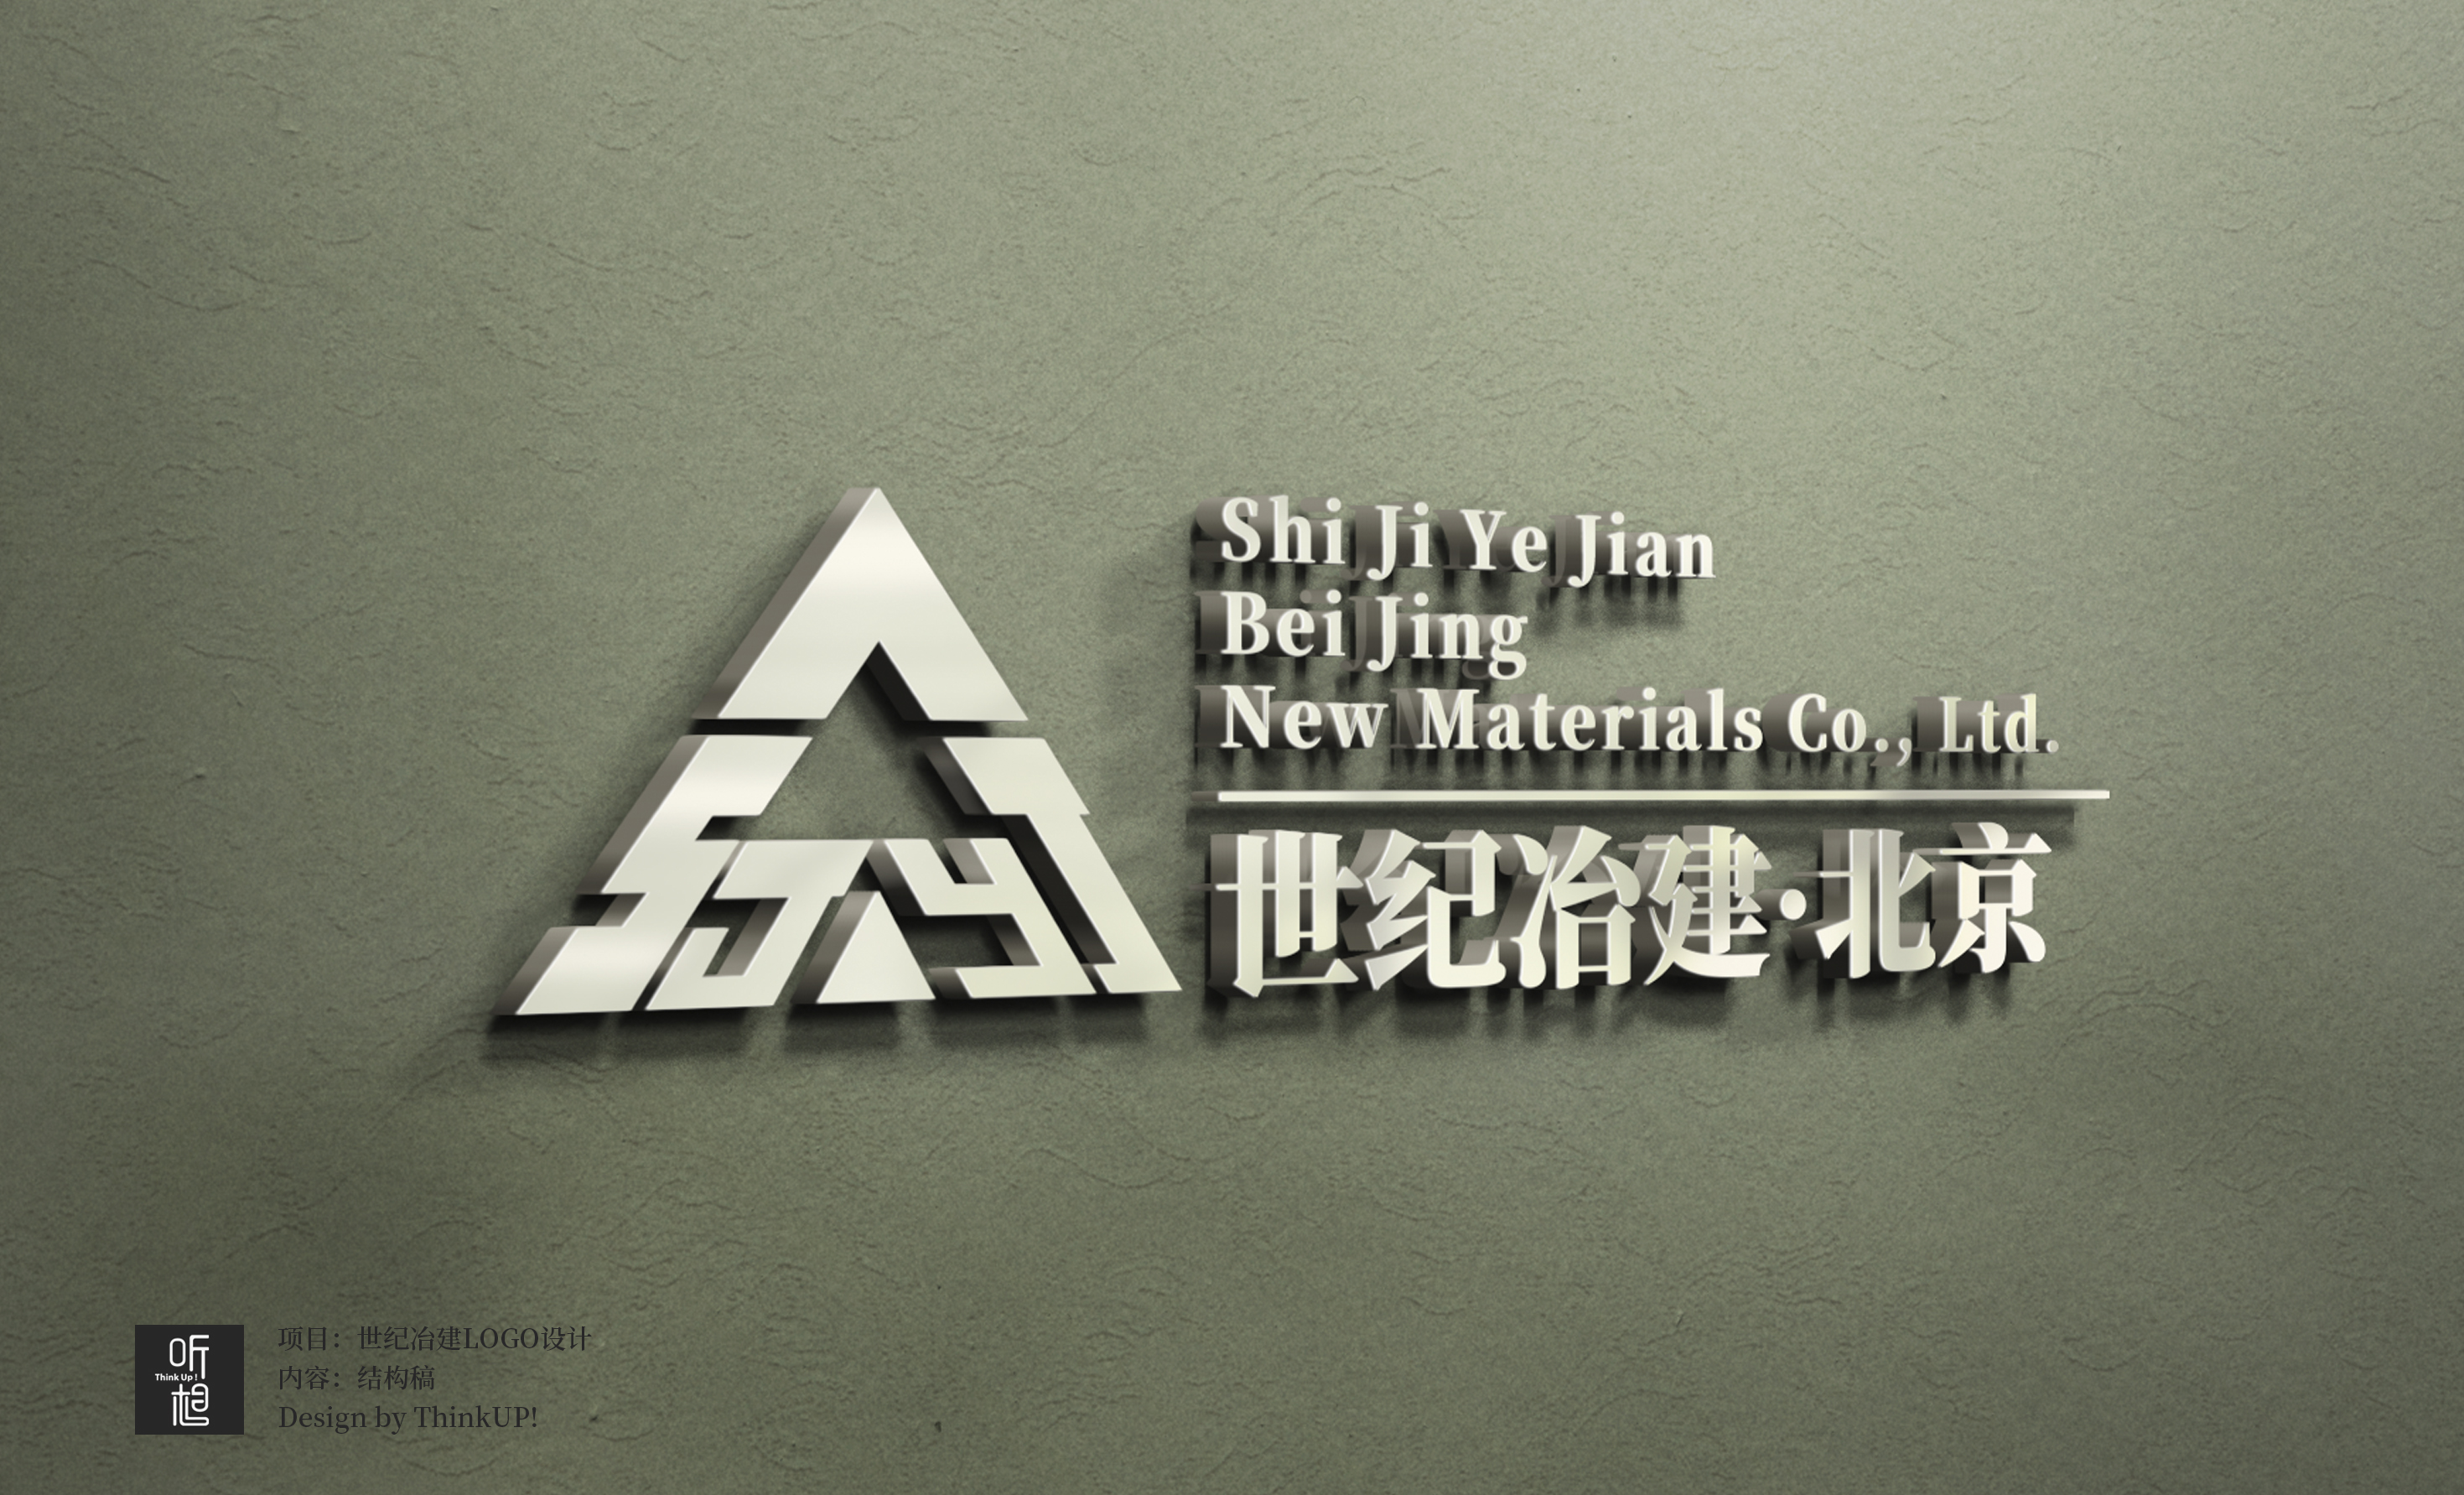 世纪冶建(北京)新材料有限公司